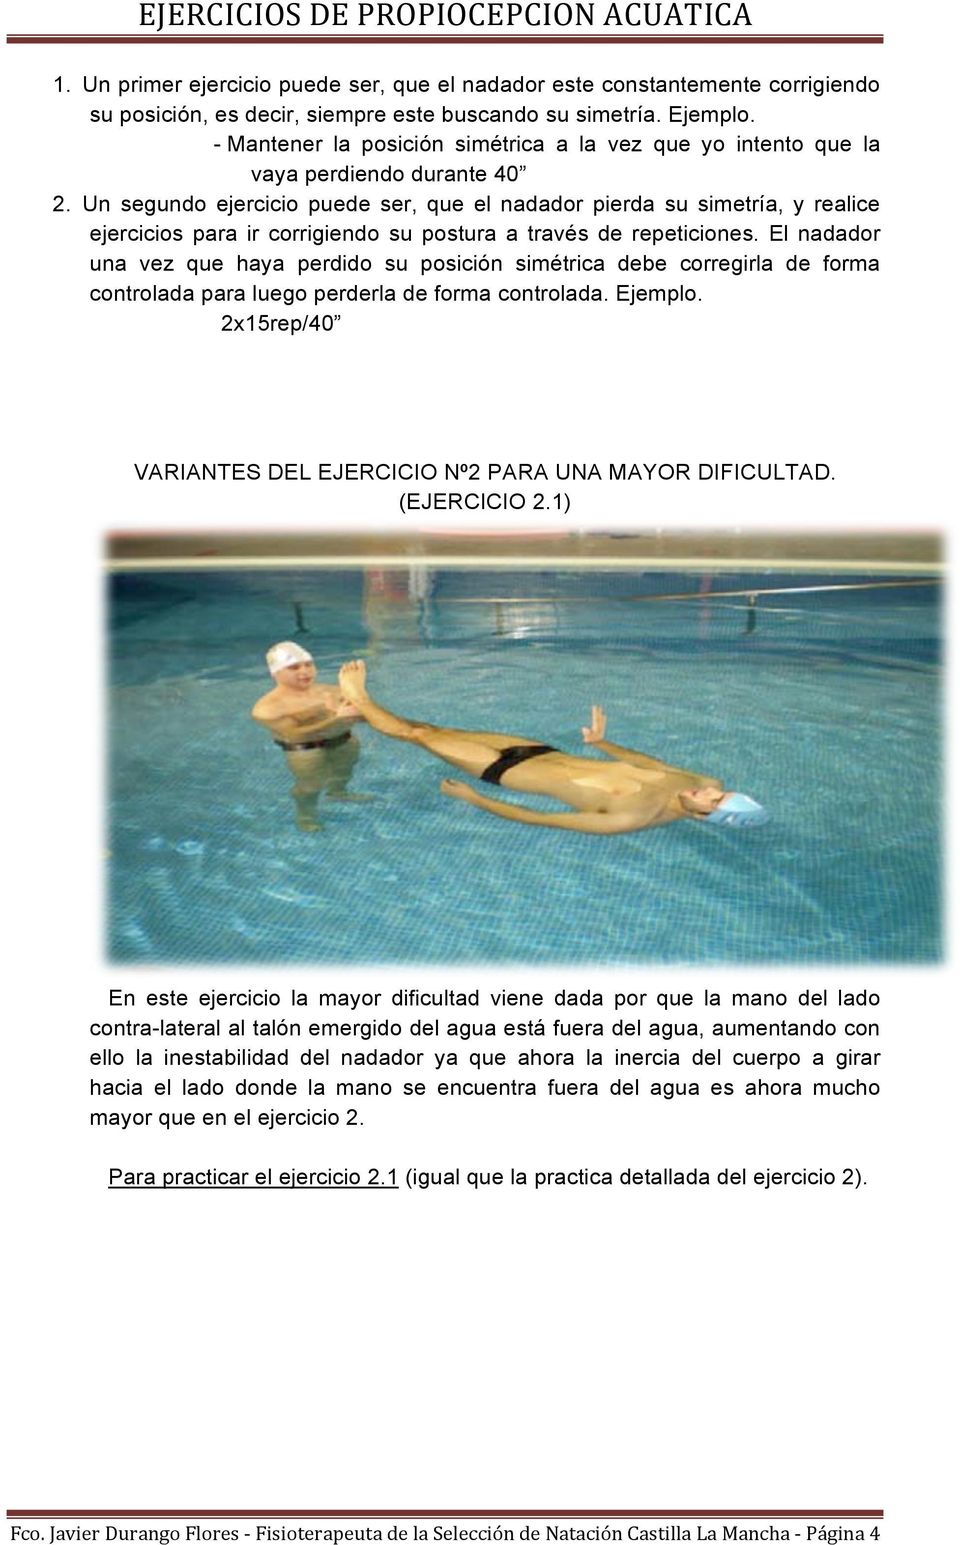 Un segundo ejercicio puede ser, que el nadador pierda su simetría, y realice ejercicios para ir corrigiendo su postura a través de repeticiones.